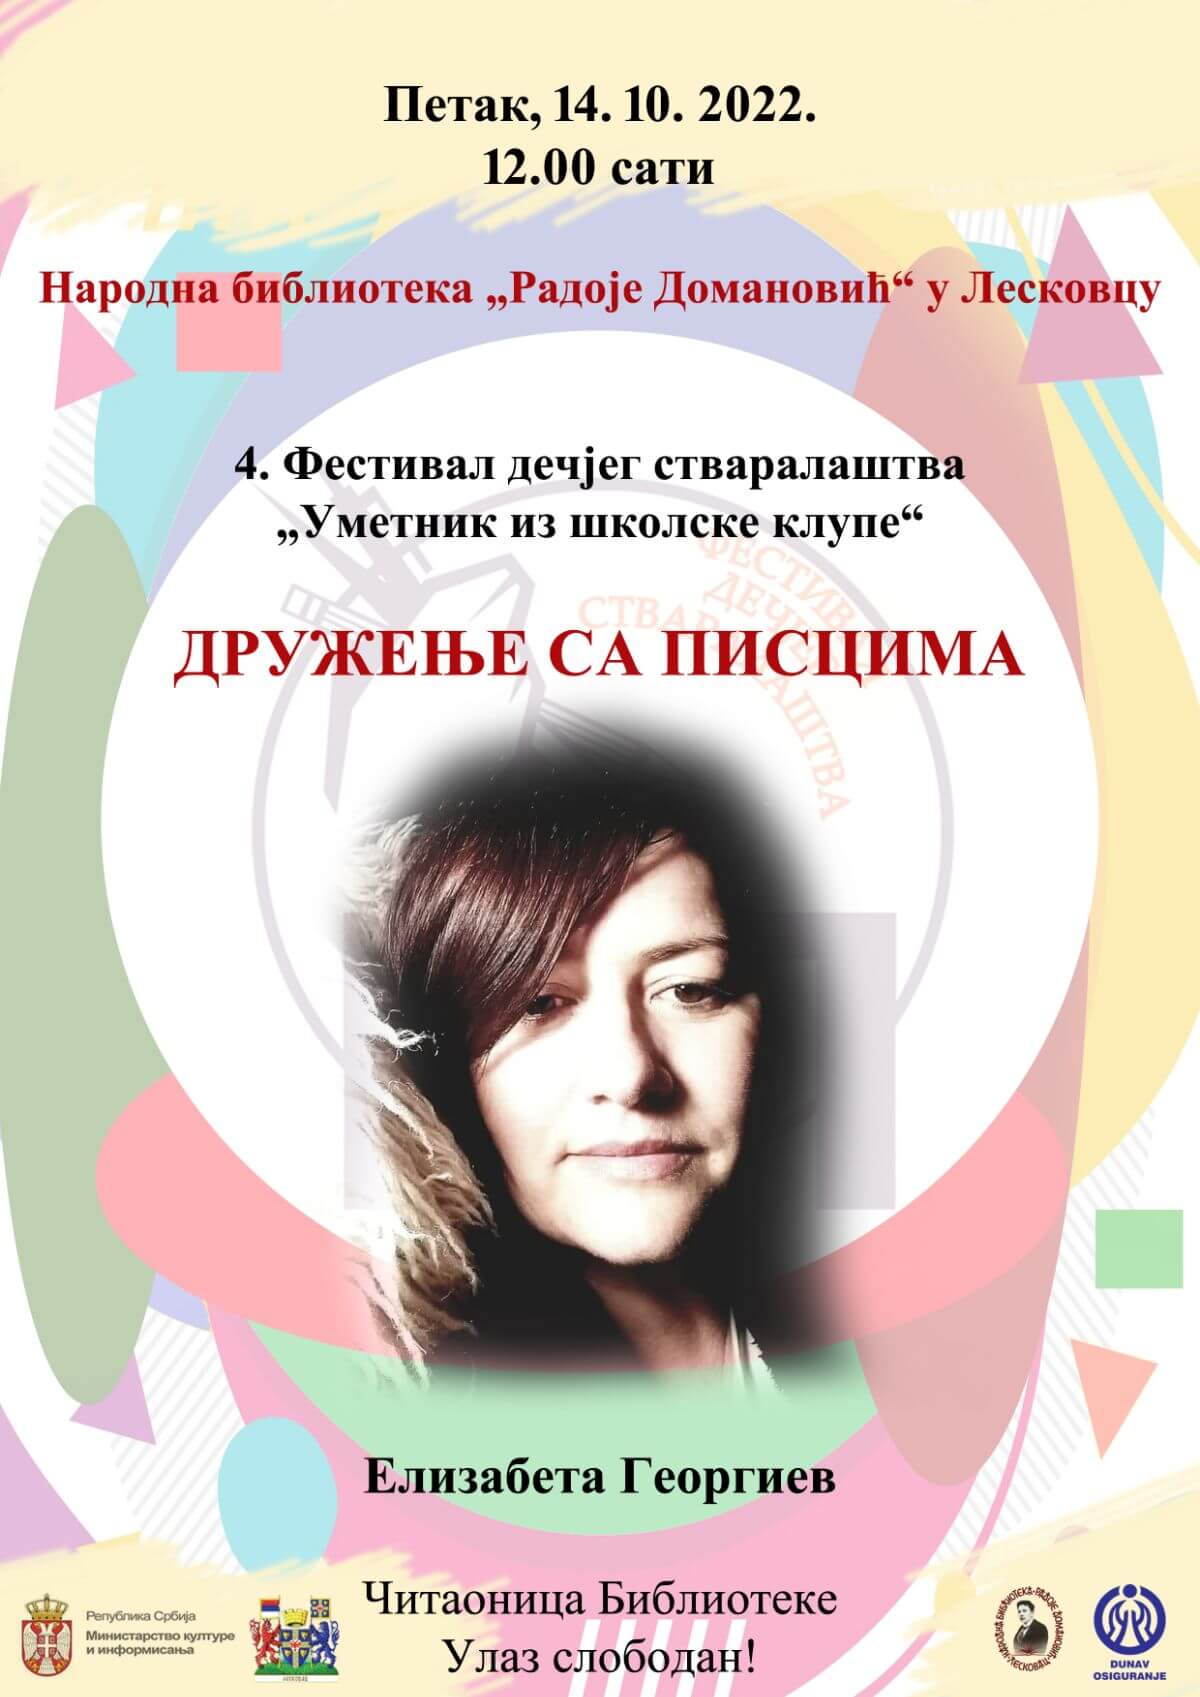 Elizabeta Georgiev plakat